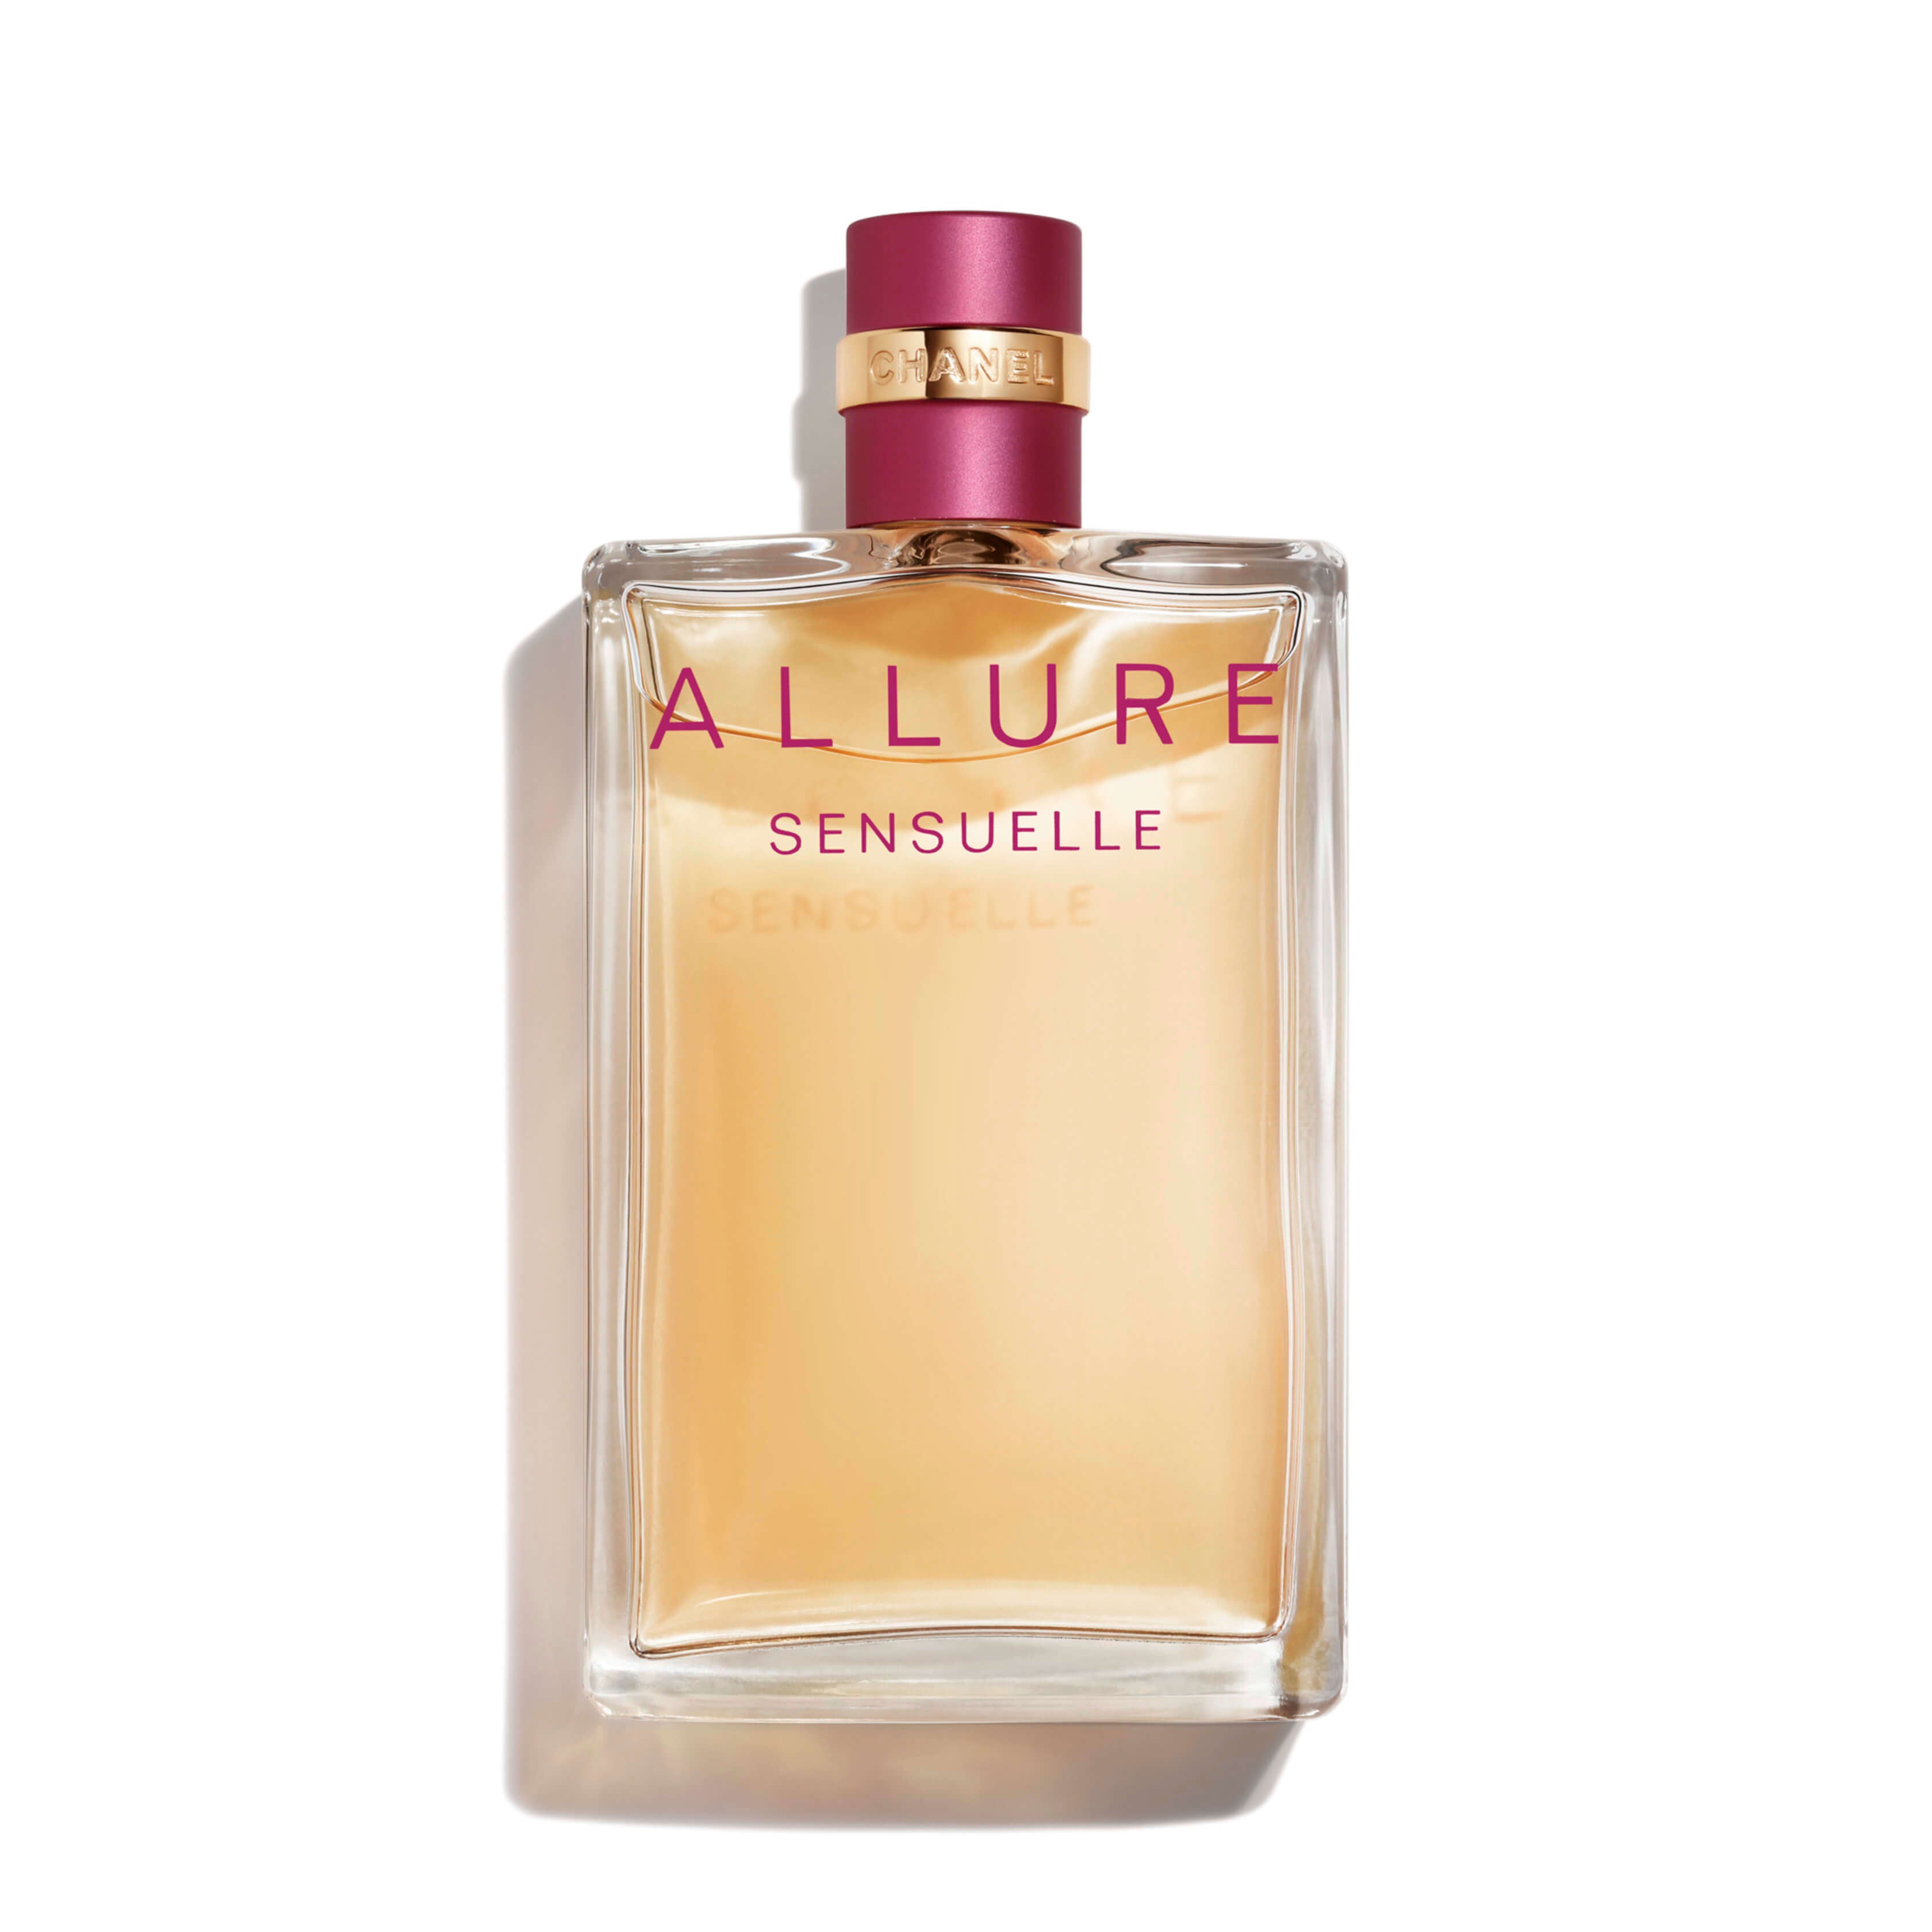 Chanel Allure Sensuelle Eau De Perfume For Women - 100ml